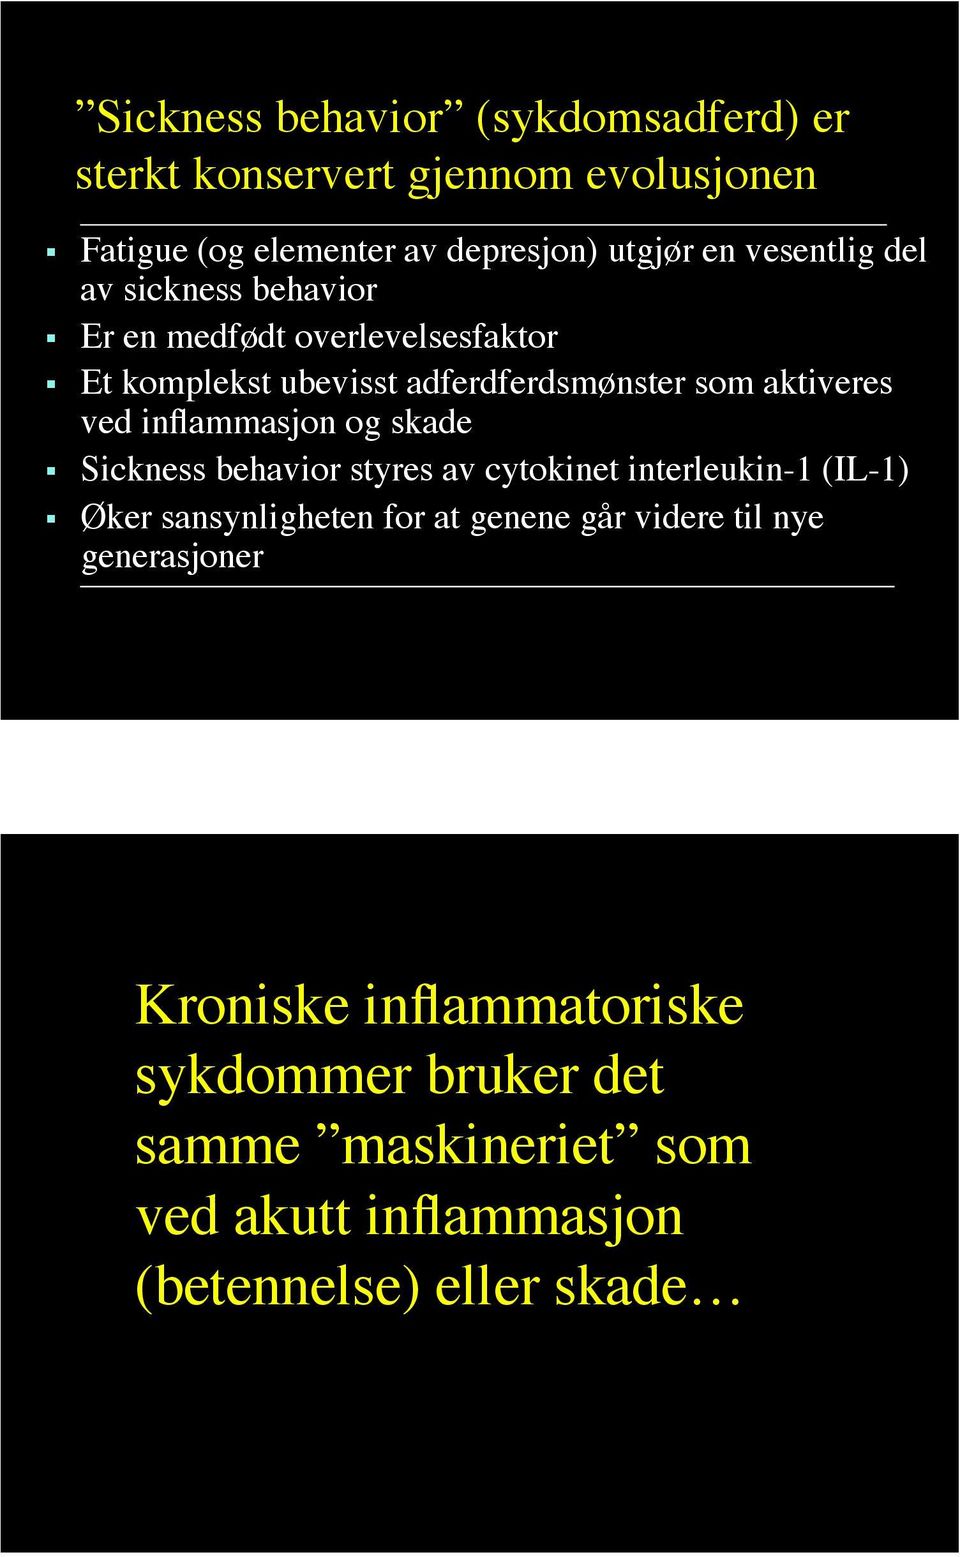 inflammasjon og skade Sickness behavior styres av cytokinet interleukin-1 (IL-1) Øker sansynligheten for at genene går videre